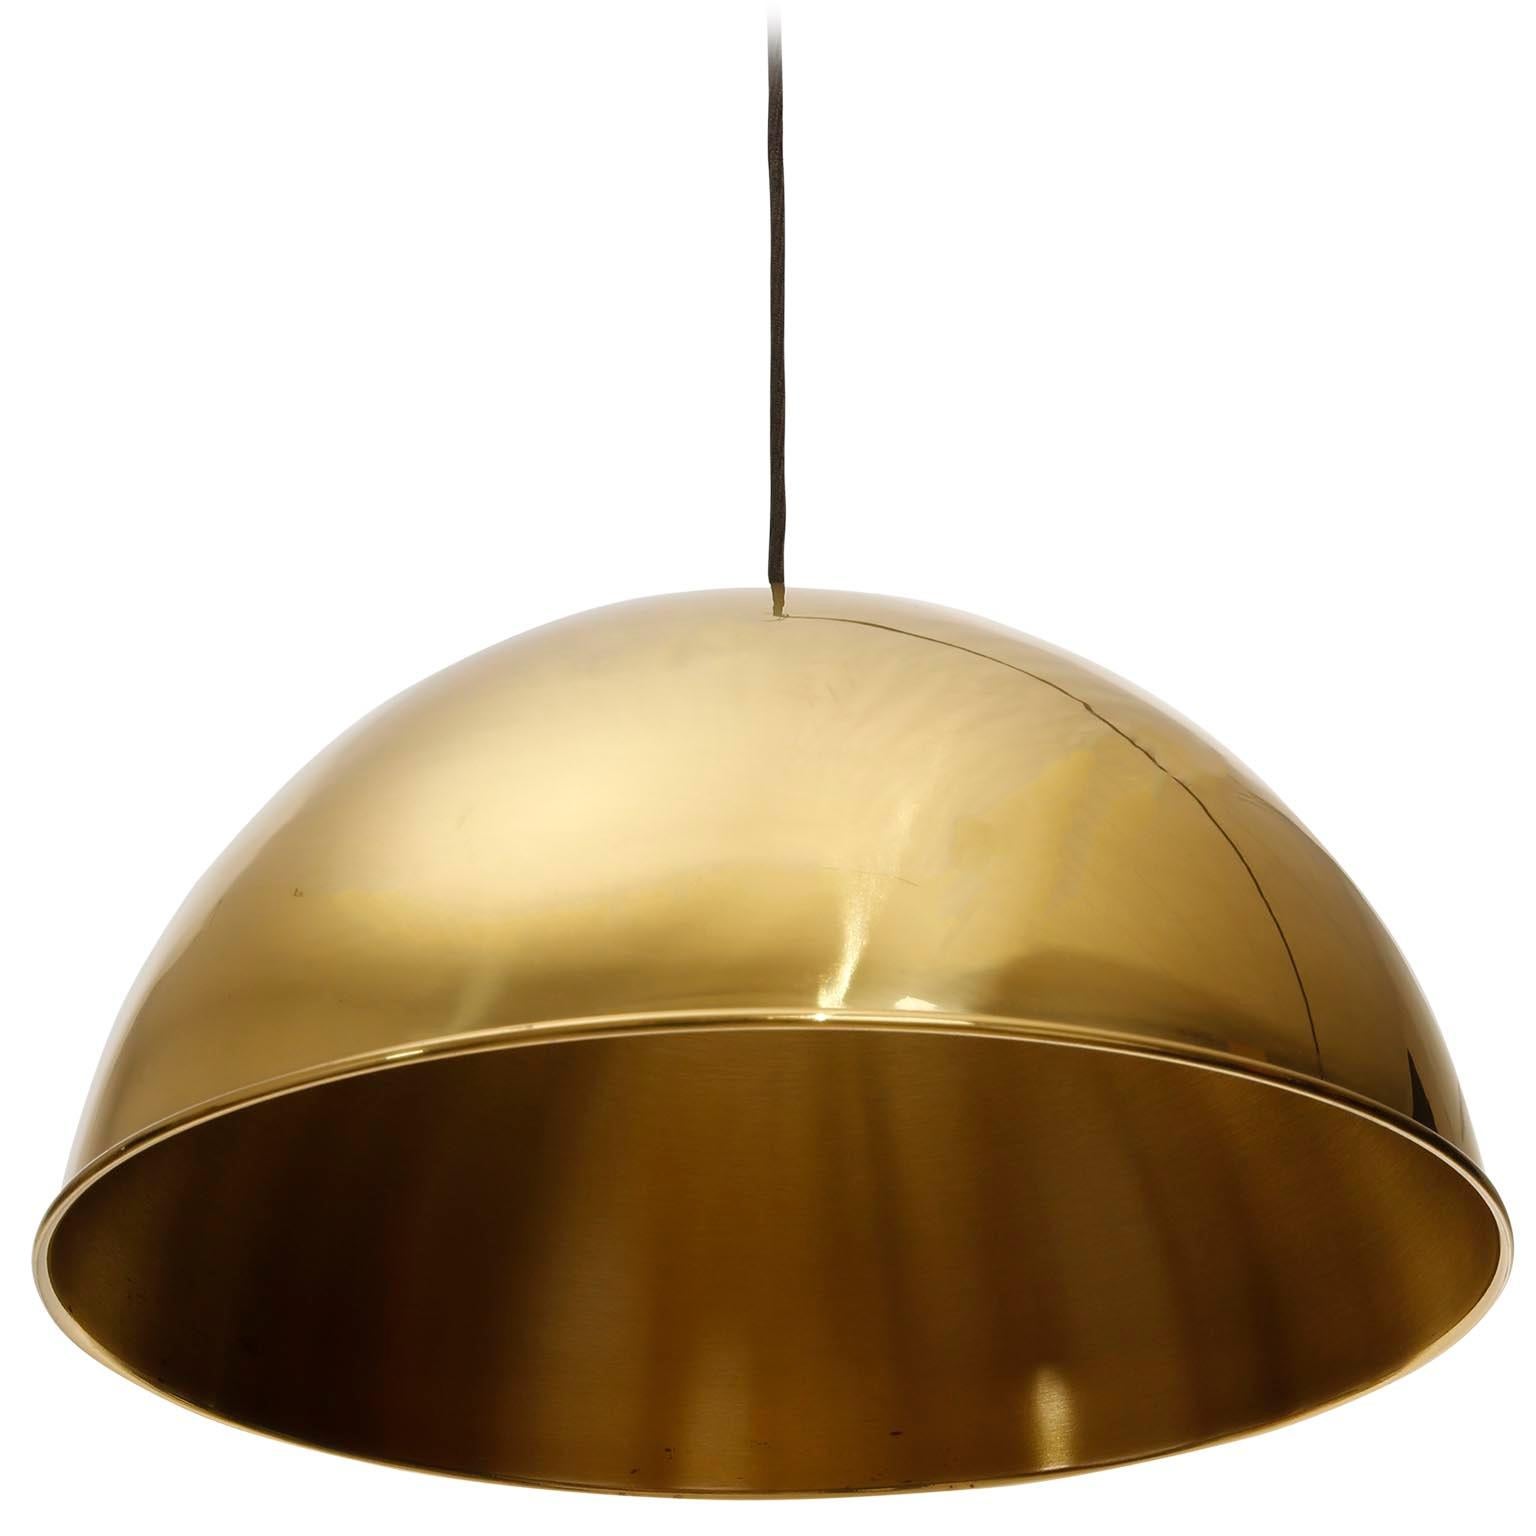 Florian Schulz Dome Pendant Light, Brass Counterweight Counter Balance, 1970 (Patiniert)